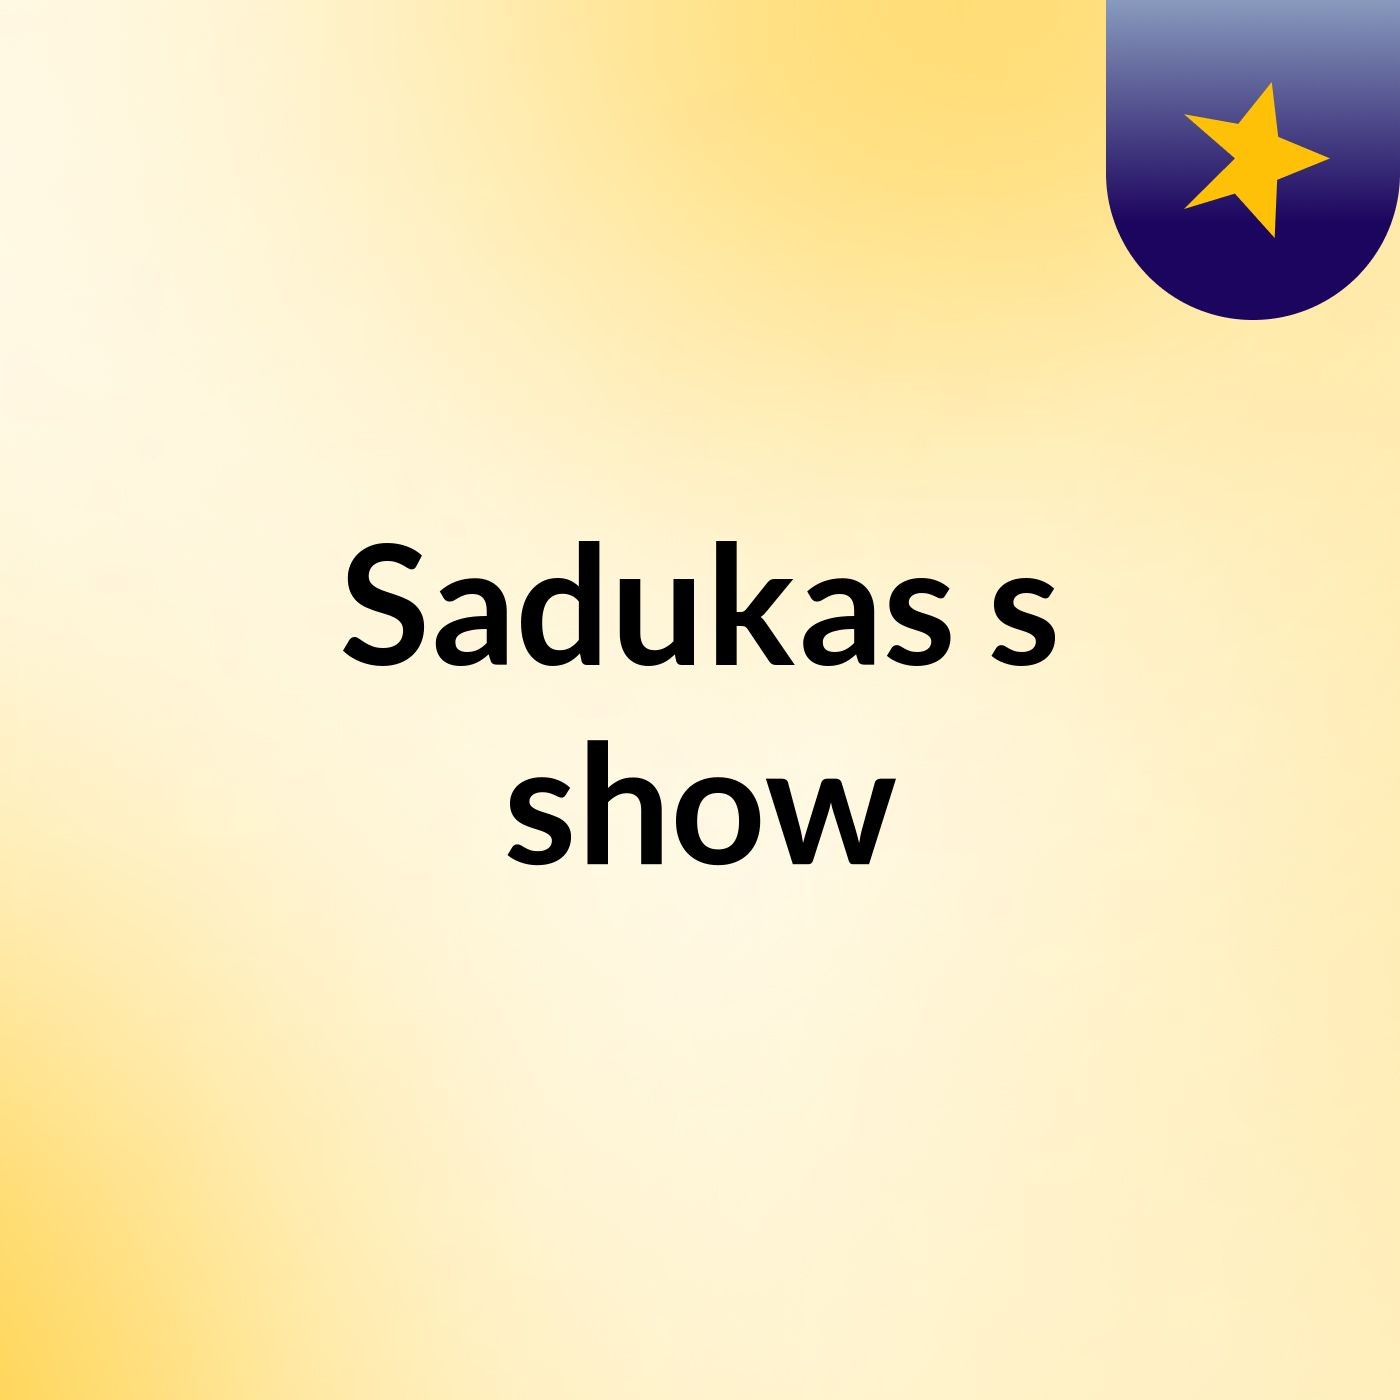 Sadukas's show